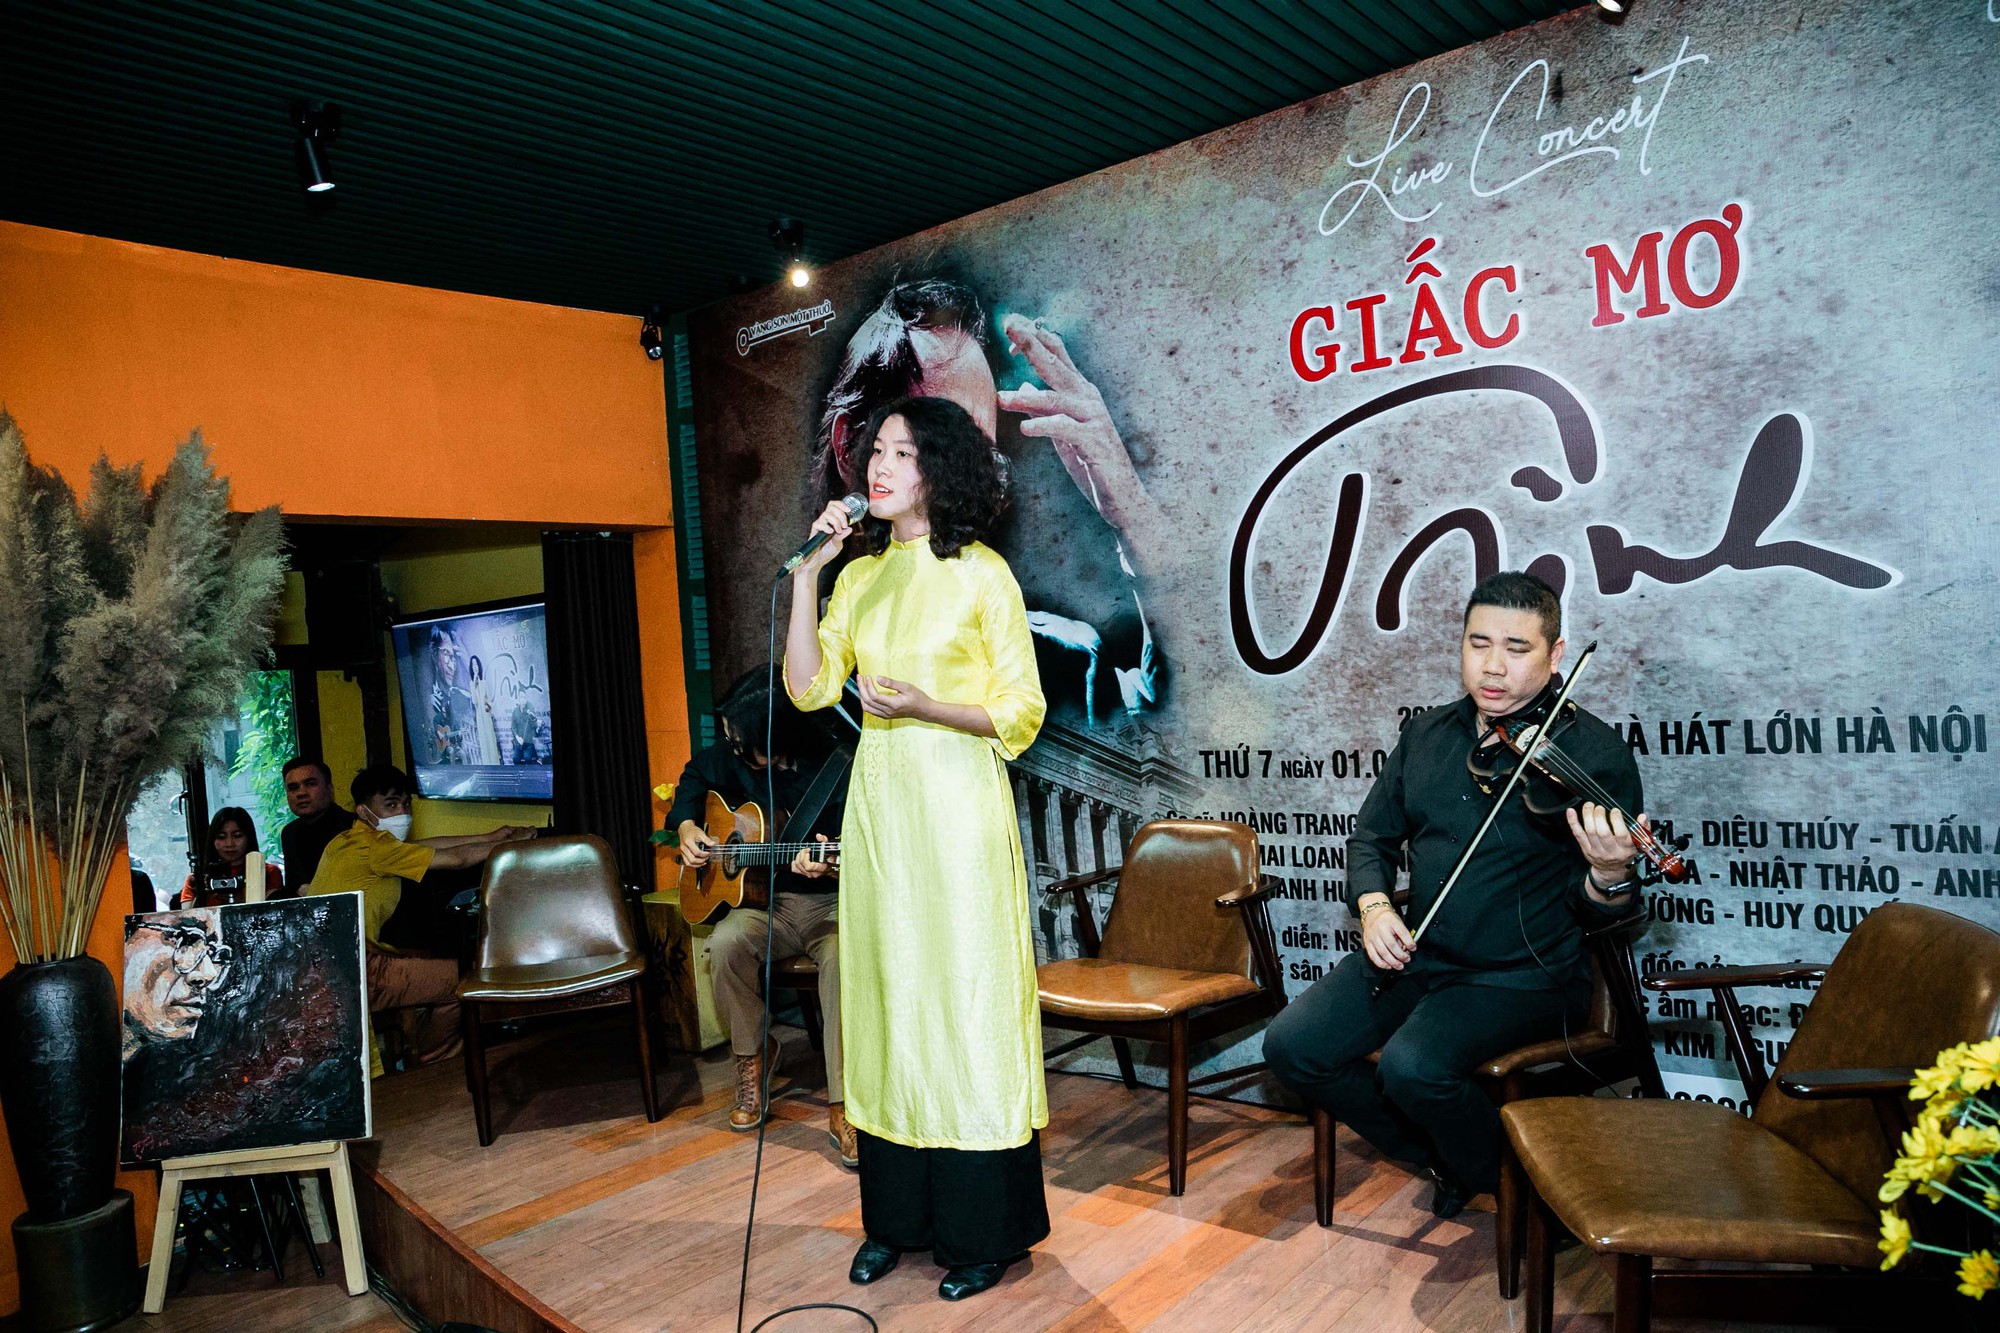 Những tiết lộ đặc biệt về mối quan hệ giữa nhạc sĩ Trịnh Công Sơn và nhạc sĩ Nguyễn Ánh 9 - Ảnh 2.